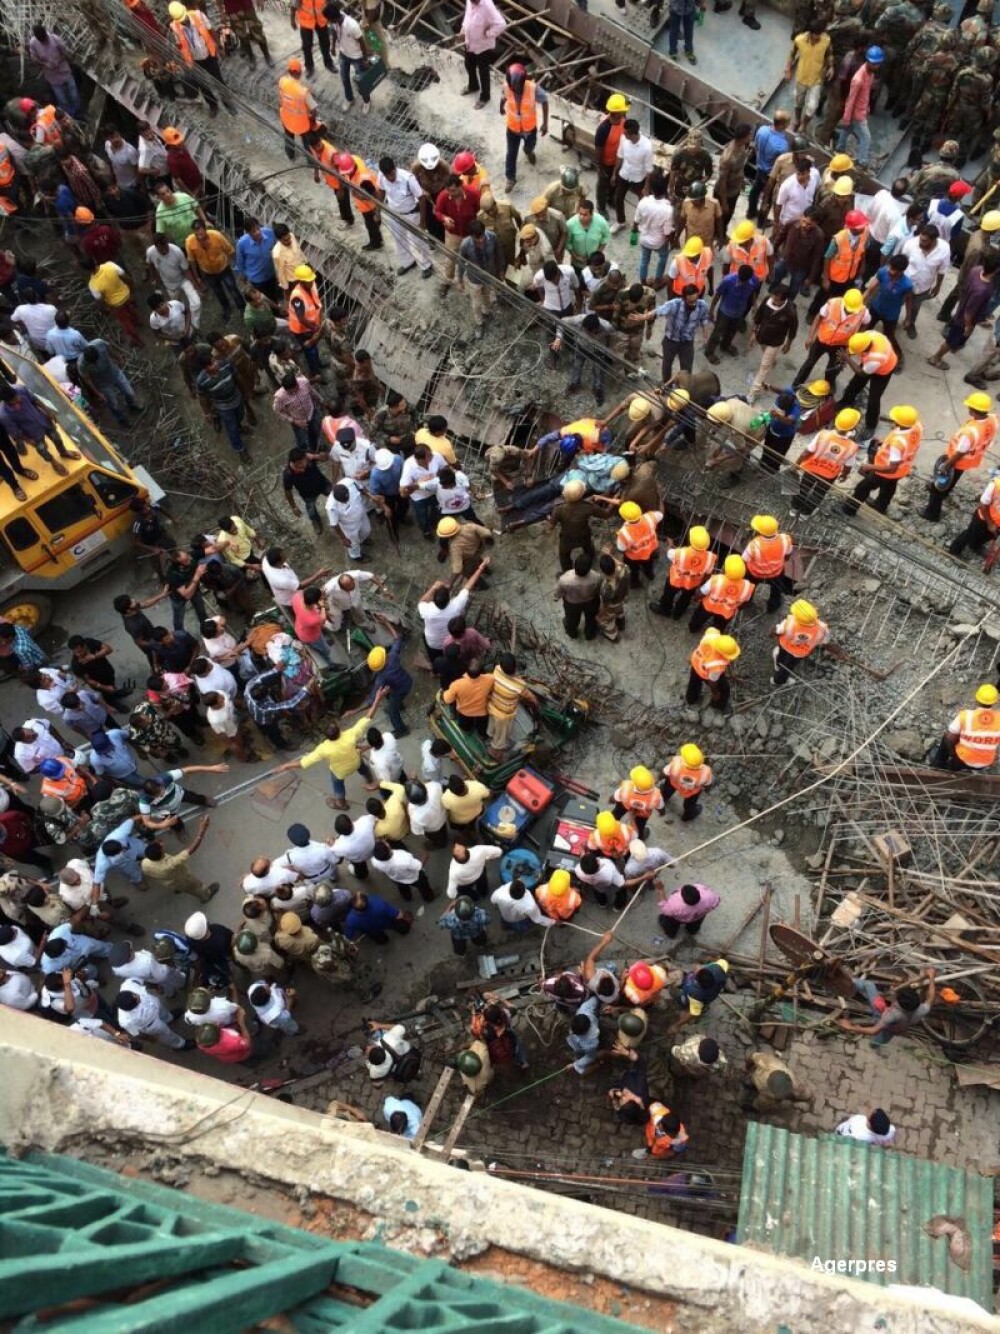 Tragedie in India, dupa ce o pasarela s-a prabusit. CNN: Sunt 22 de morti si 75 de raniti. Ampla operatiune de salvare - Imaginea 3